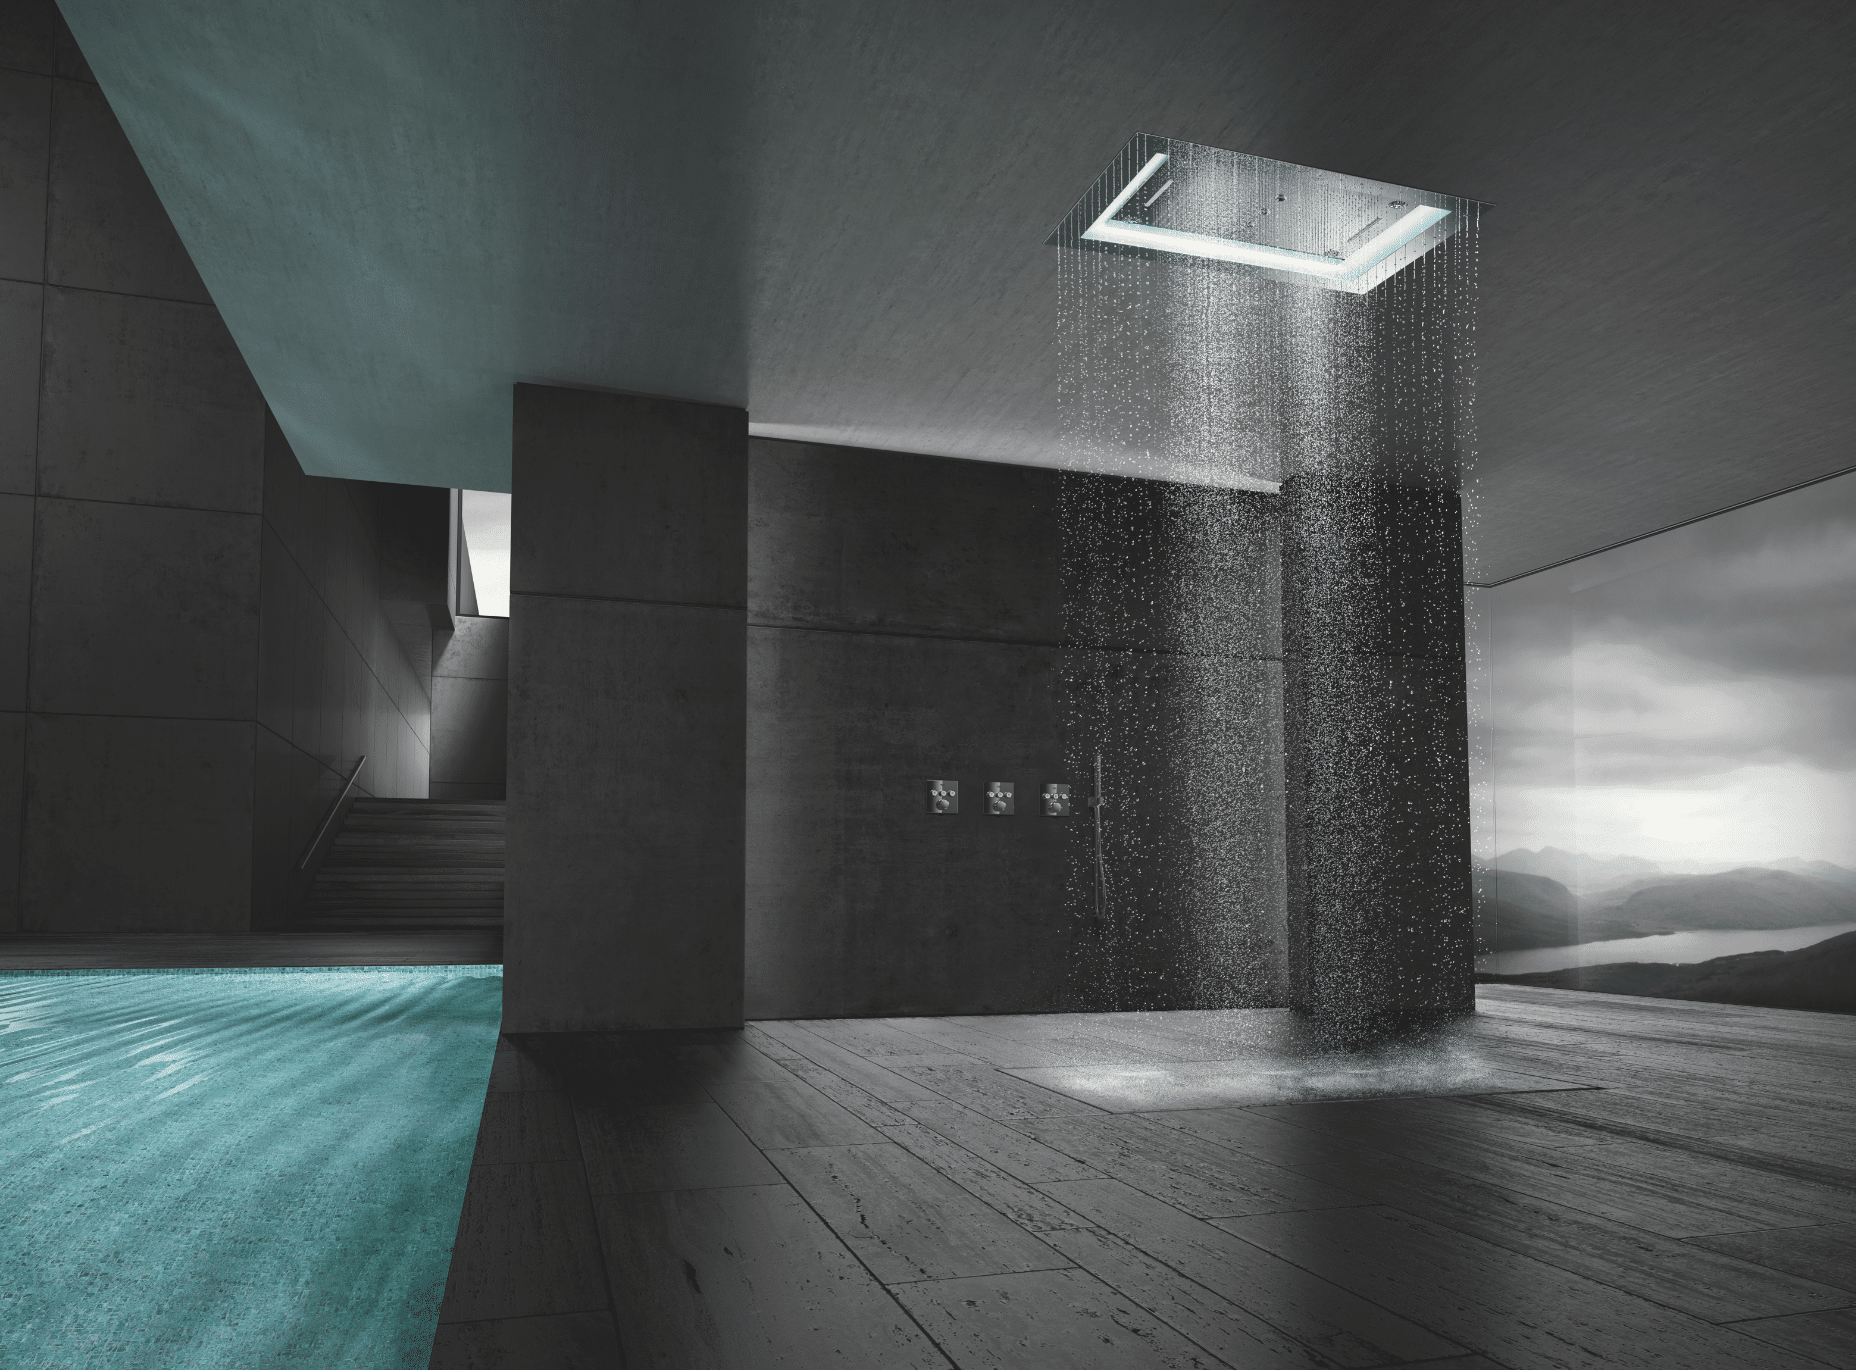 Grohe zeigt eine schwarze Wellnessoase mit Regendusche, türkisem Wasser im Pool und Treppenaufgang.